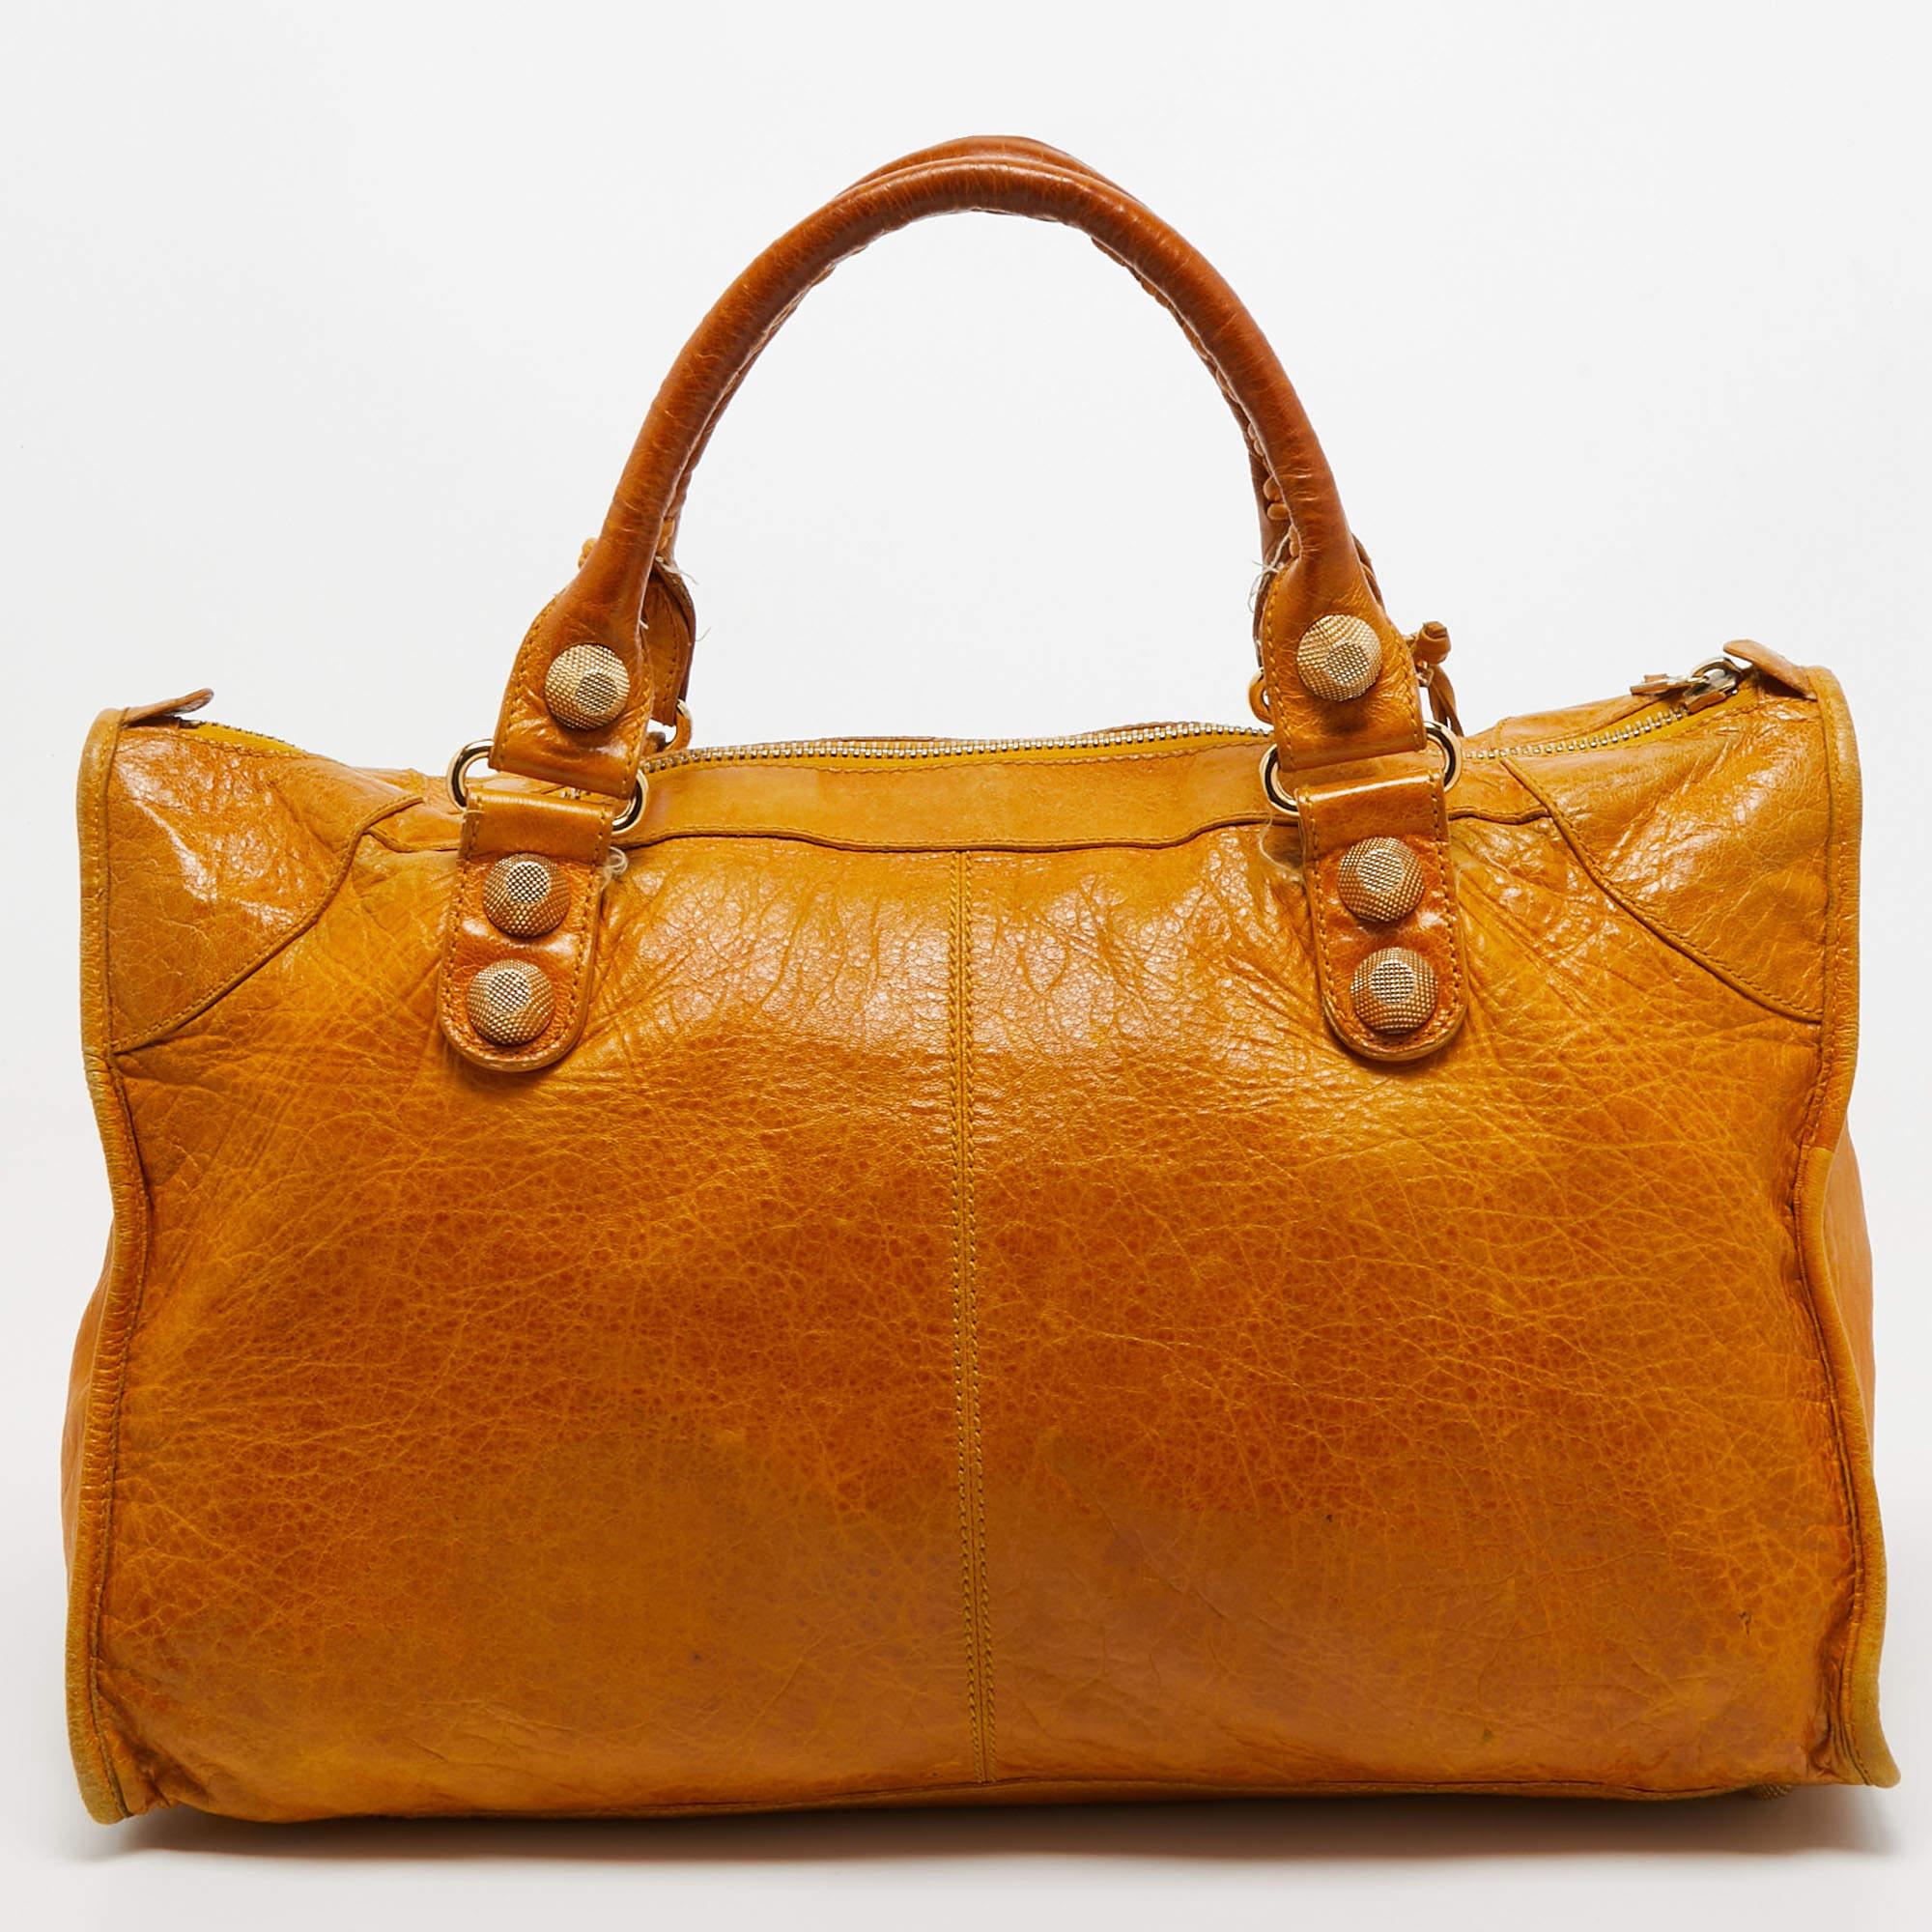 Élevez votre style avec ce sac Balenciaga. Alliant forme et fonction, cet accessoire exquis incarne la sophistication, vous assurant de vous démarquer avec élégance et praticité à vos côtés.

